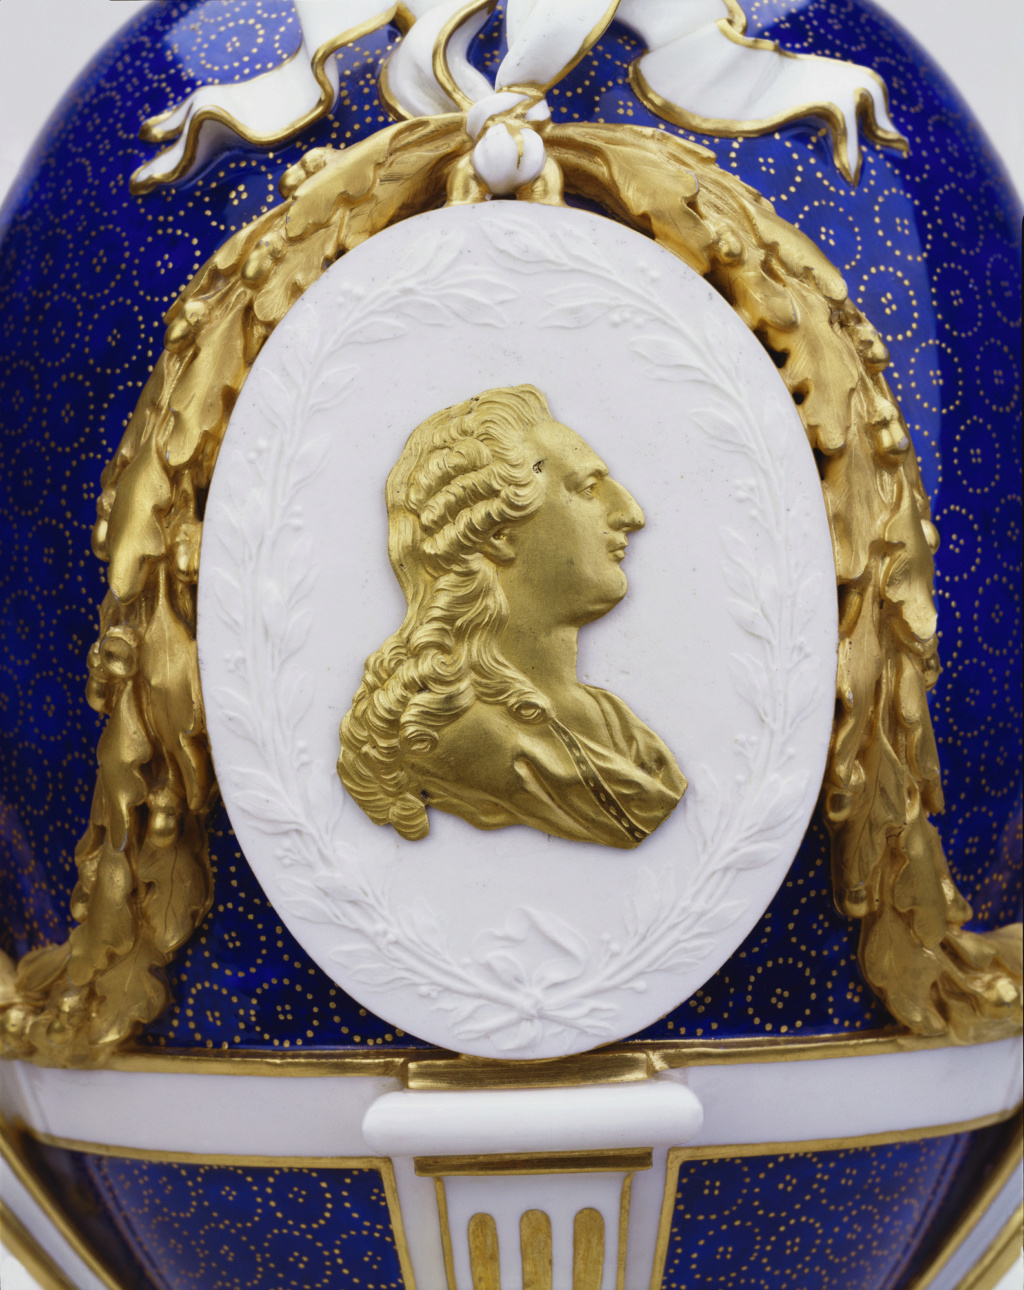 Les vases "oeuf" en porcelaine de Sèvres du XVIIIe siècle 18648710